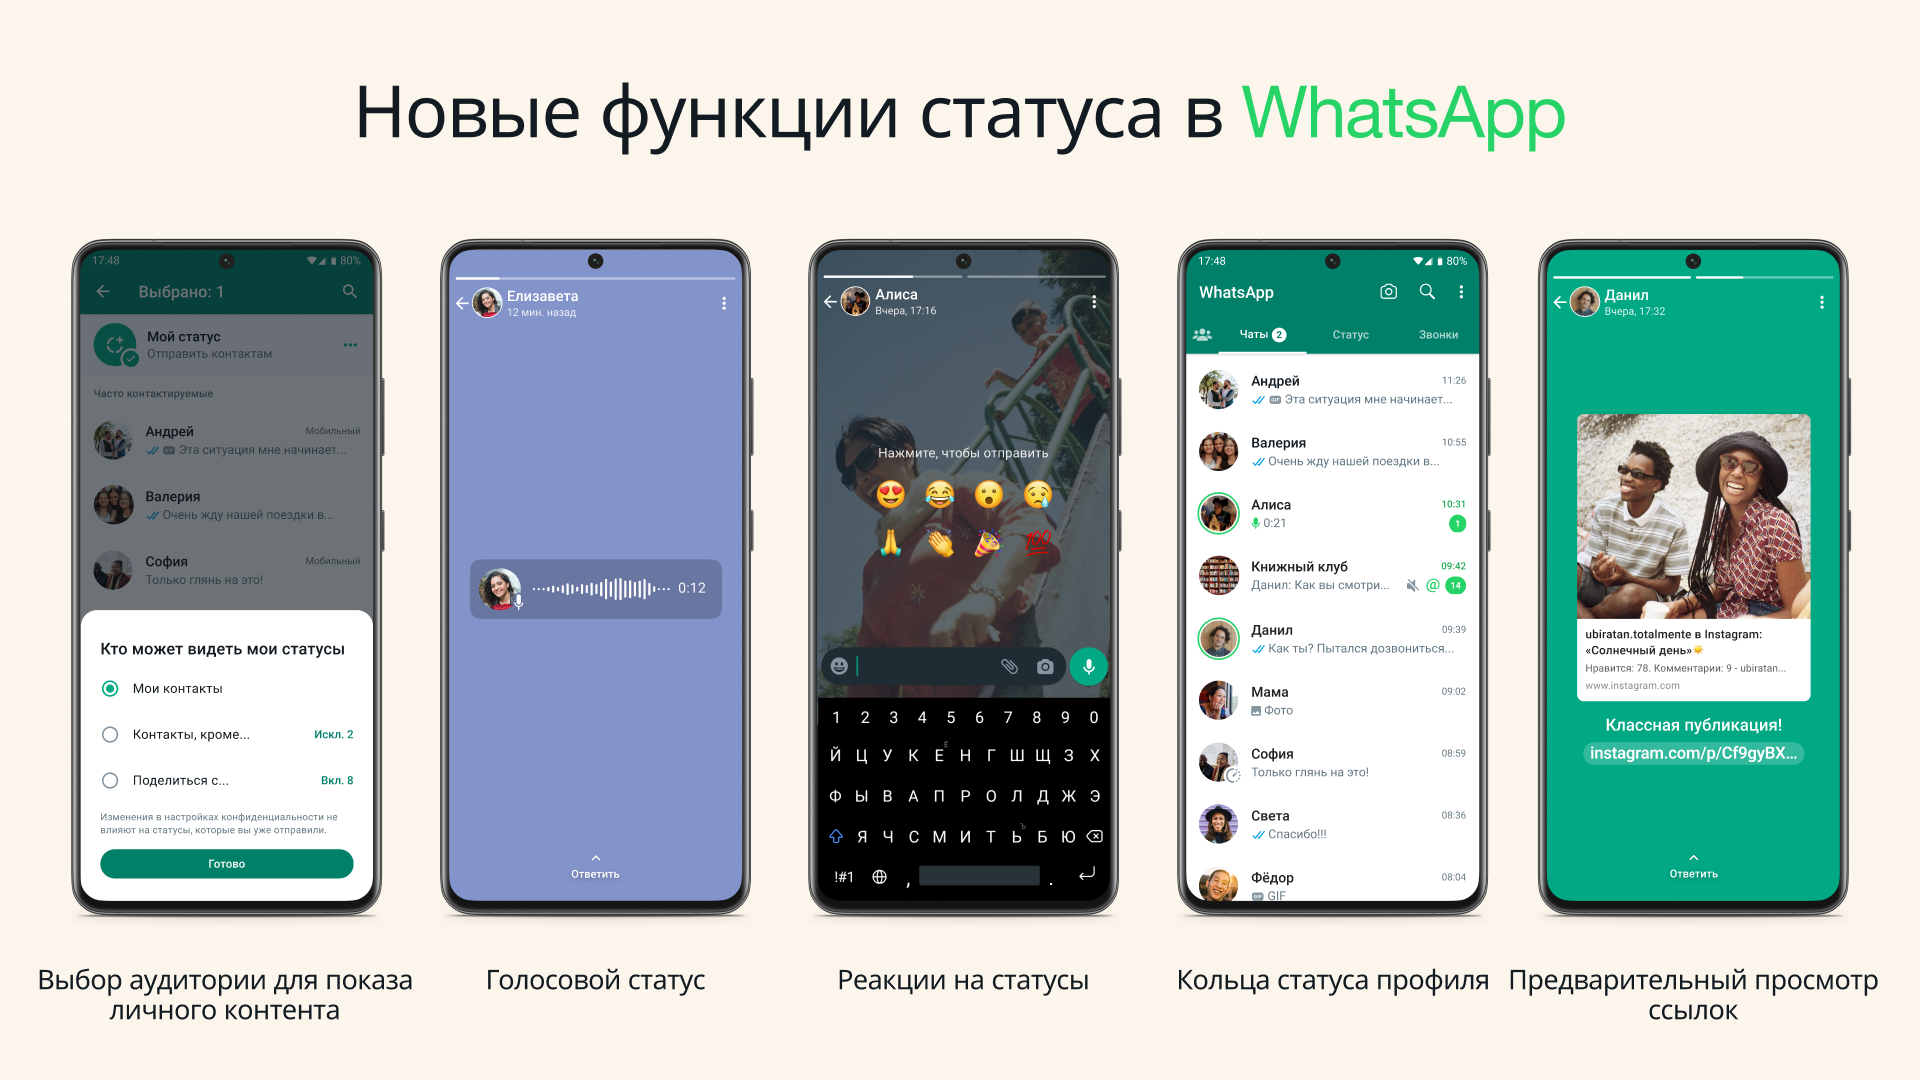 Вышло крупное обновление WhatsApp. Плюс 5 функций